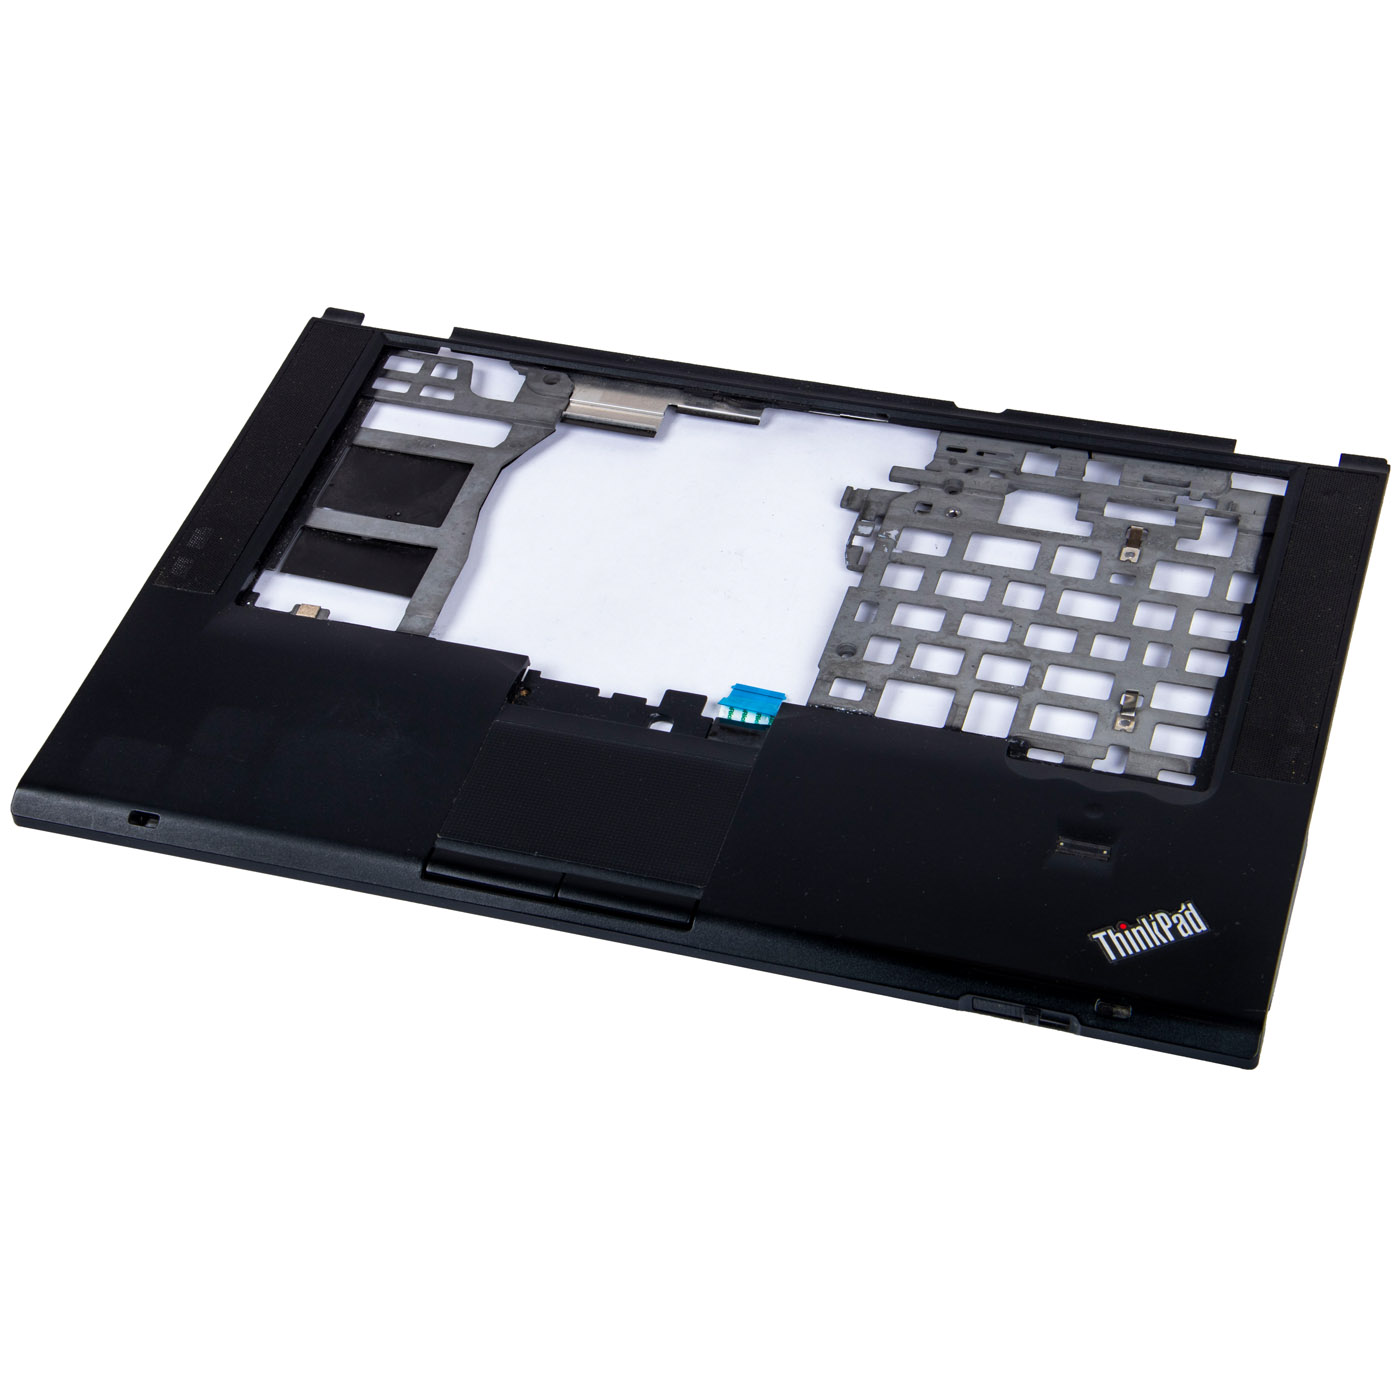 Palmrest Lenovo ThinkPad T420s 04W0607 fingerprint reader